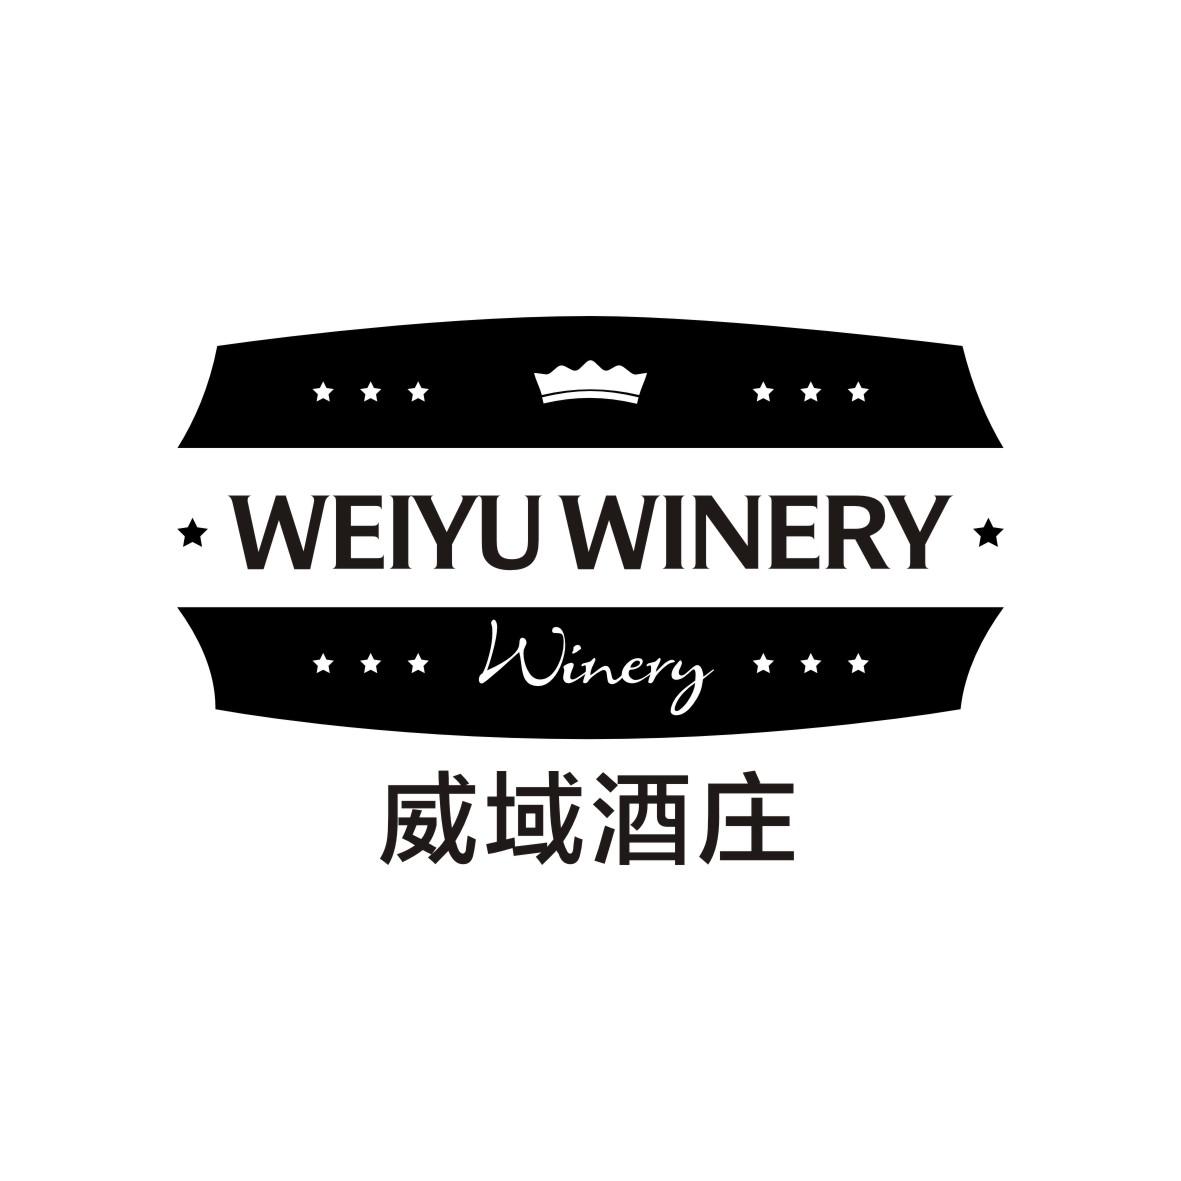 威域酒庄 WEIYU WINERY  WINERY